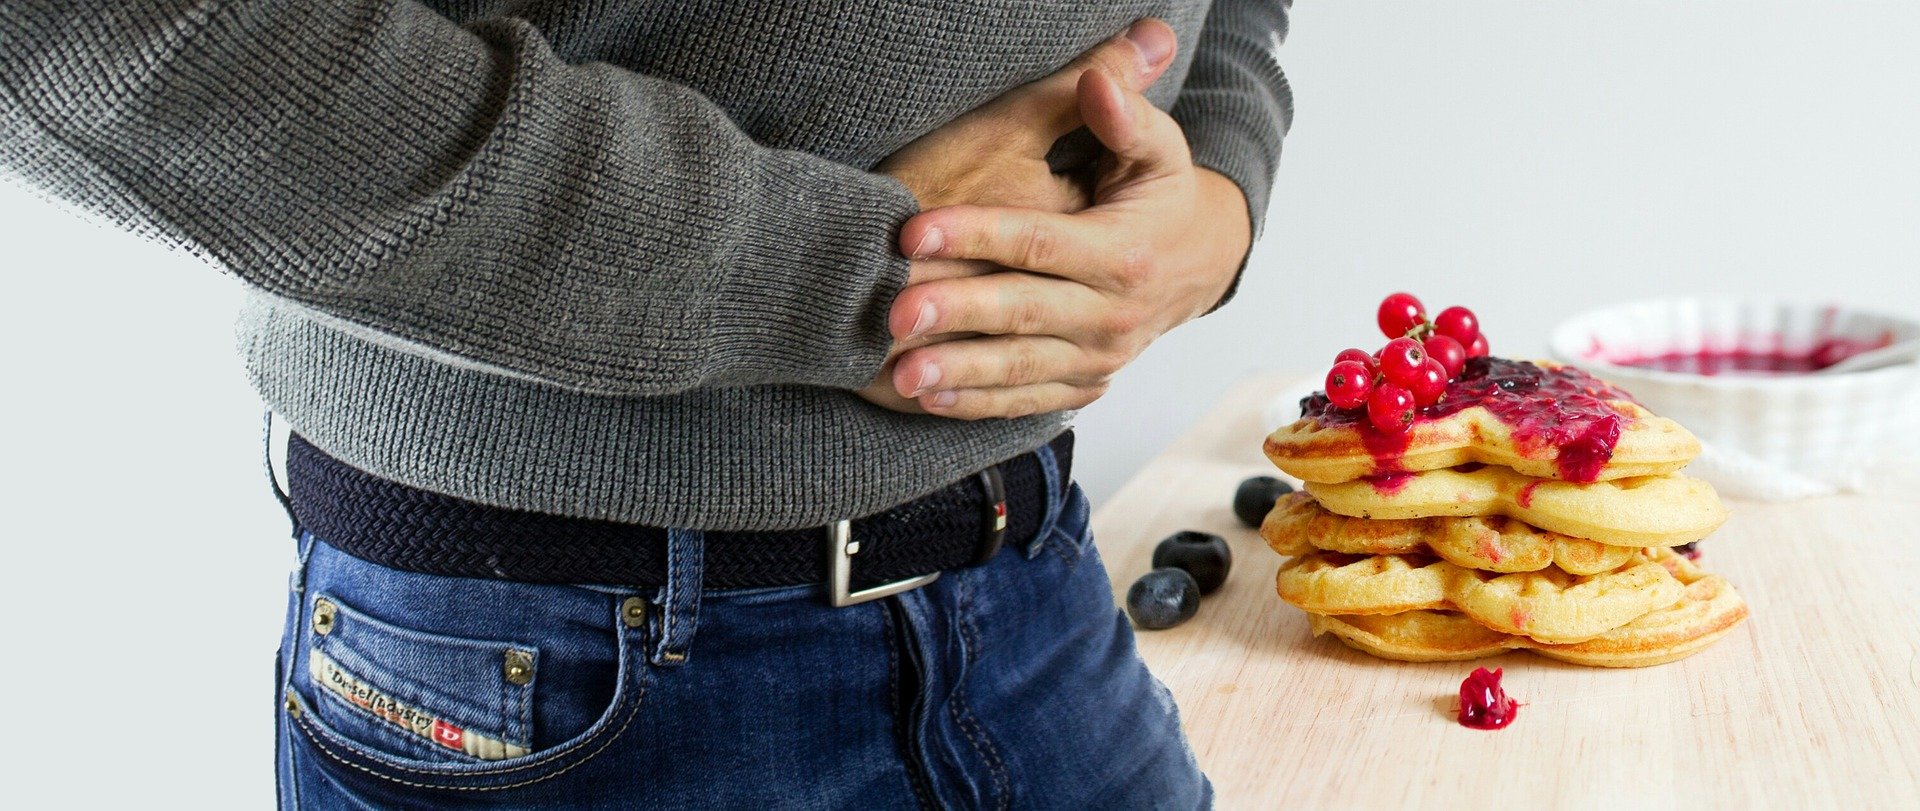 Salmonellowe zatrucia pokarmowe – przyczyny, objawy, zapobieganie